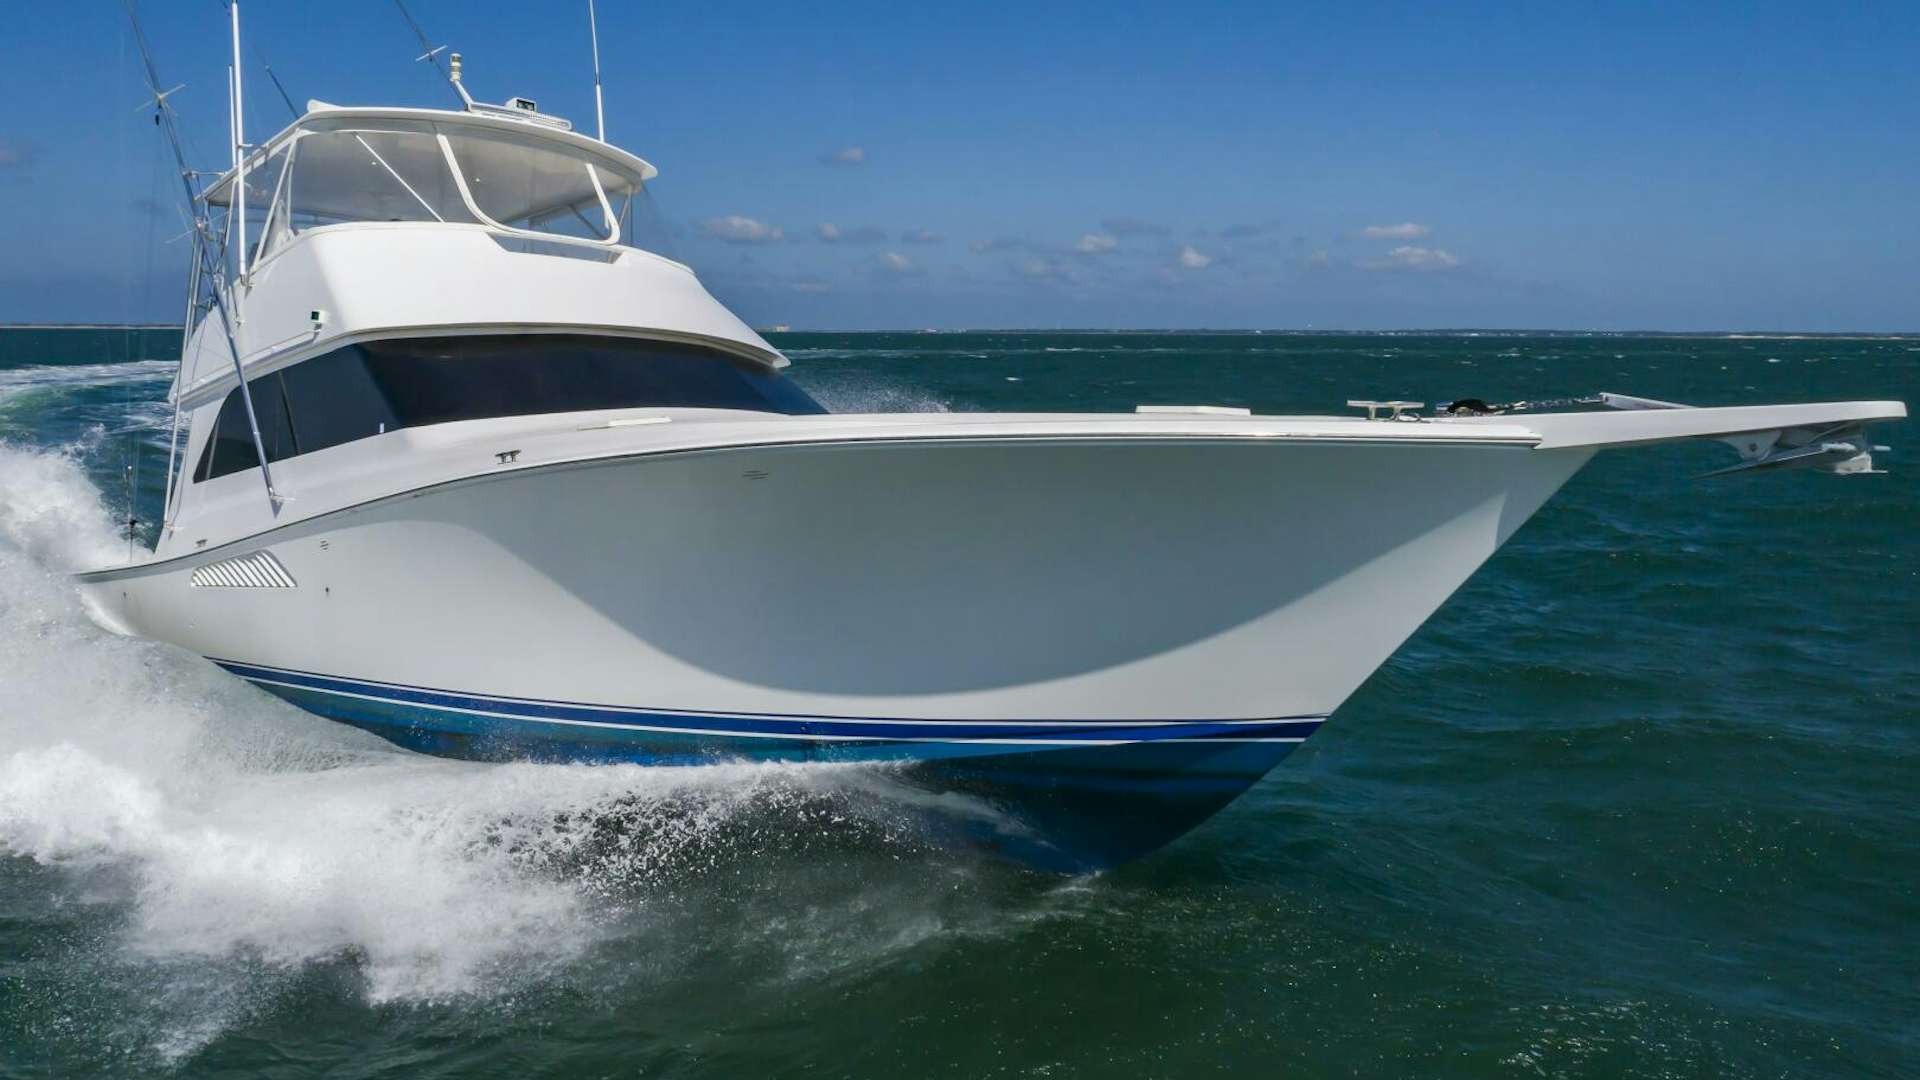 C-escape
Yacht for Sale